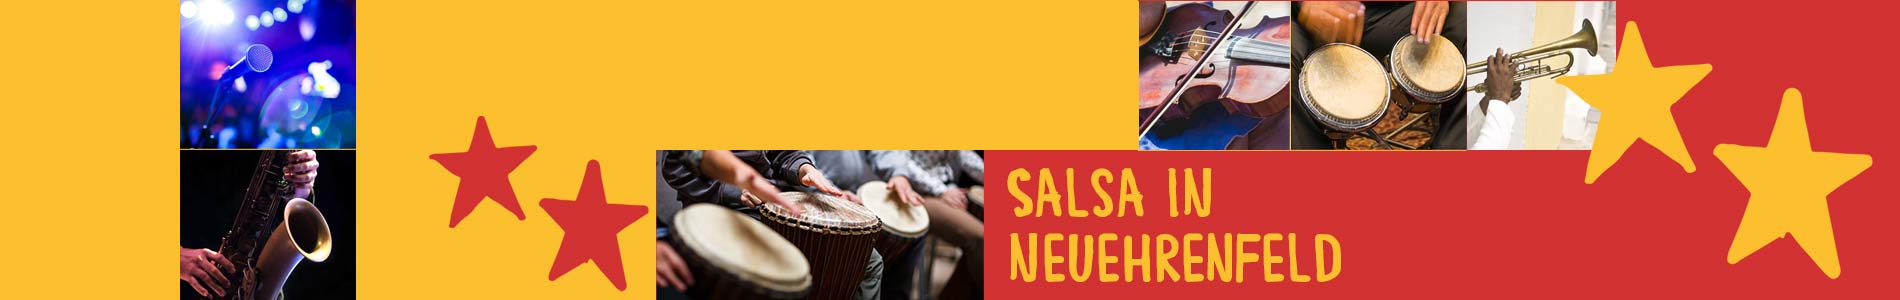 Salsa in Neuehrenfeld – Salsa lernen und tanzen, Tanzkurse, Partys, Veranstaltungen